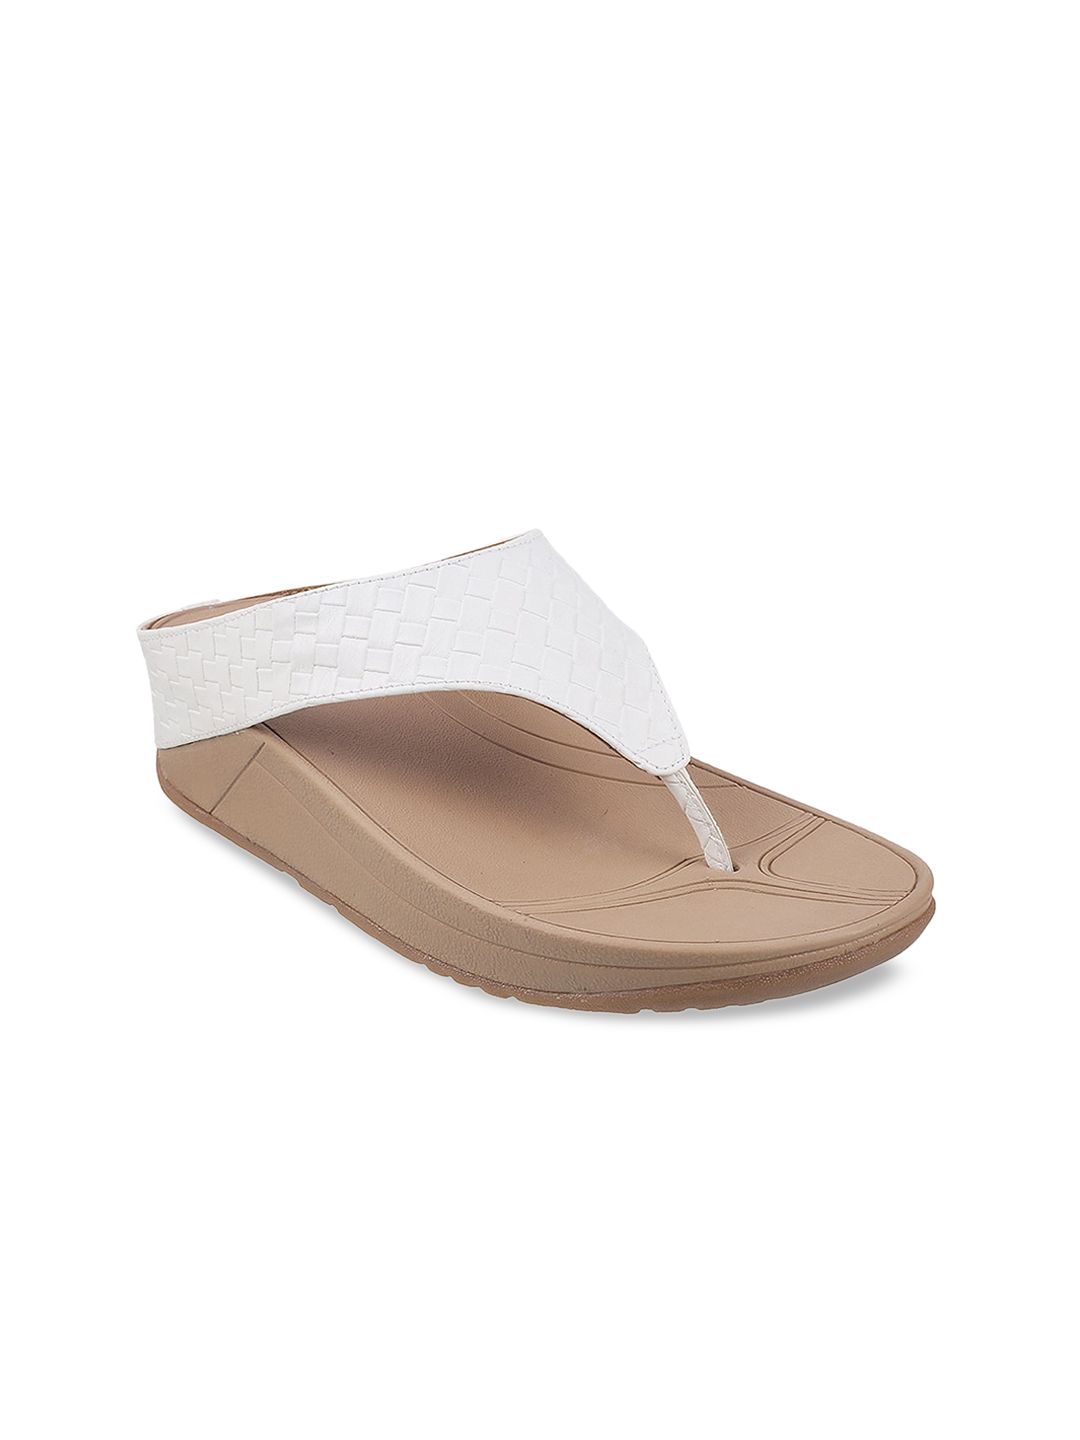 Metro White Comfort Sandals Price in India